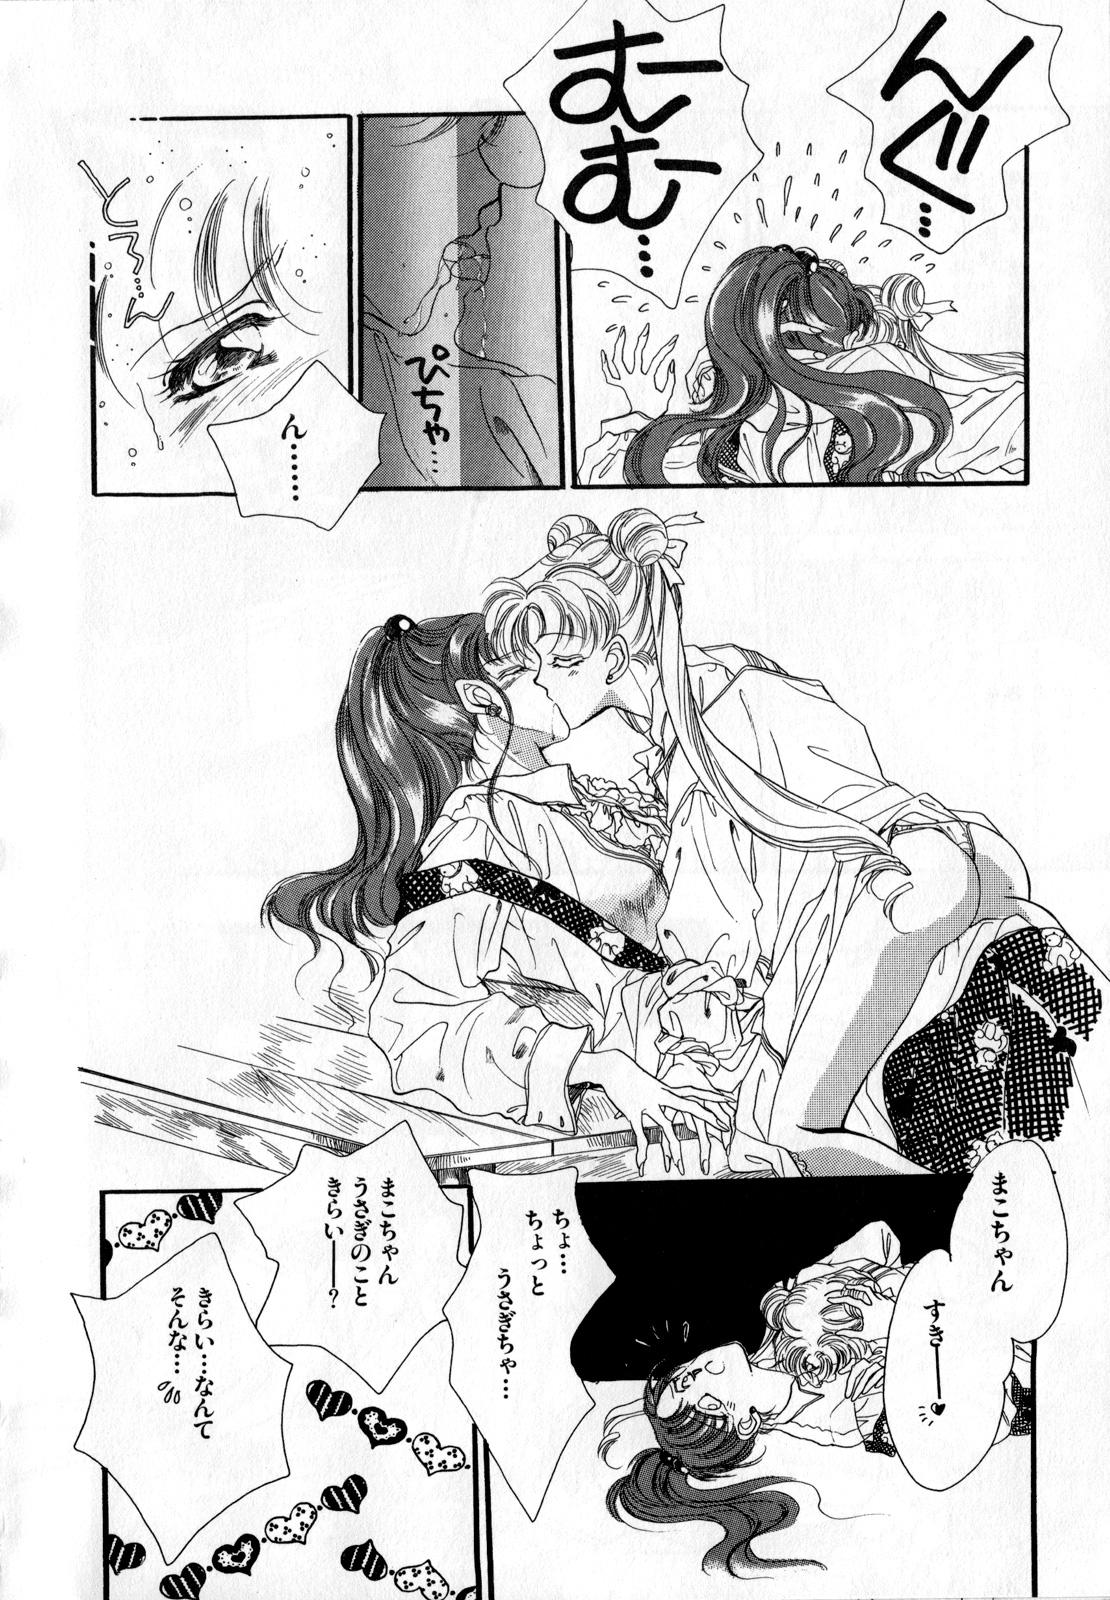 Porn Sluts Lunatic Party 2 - Sailor moon Creampie - Page 7